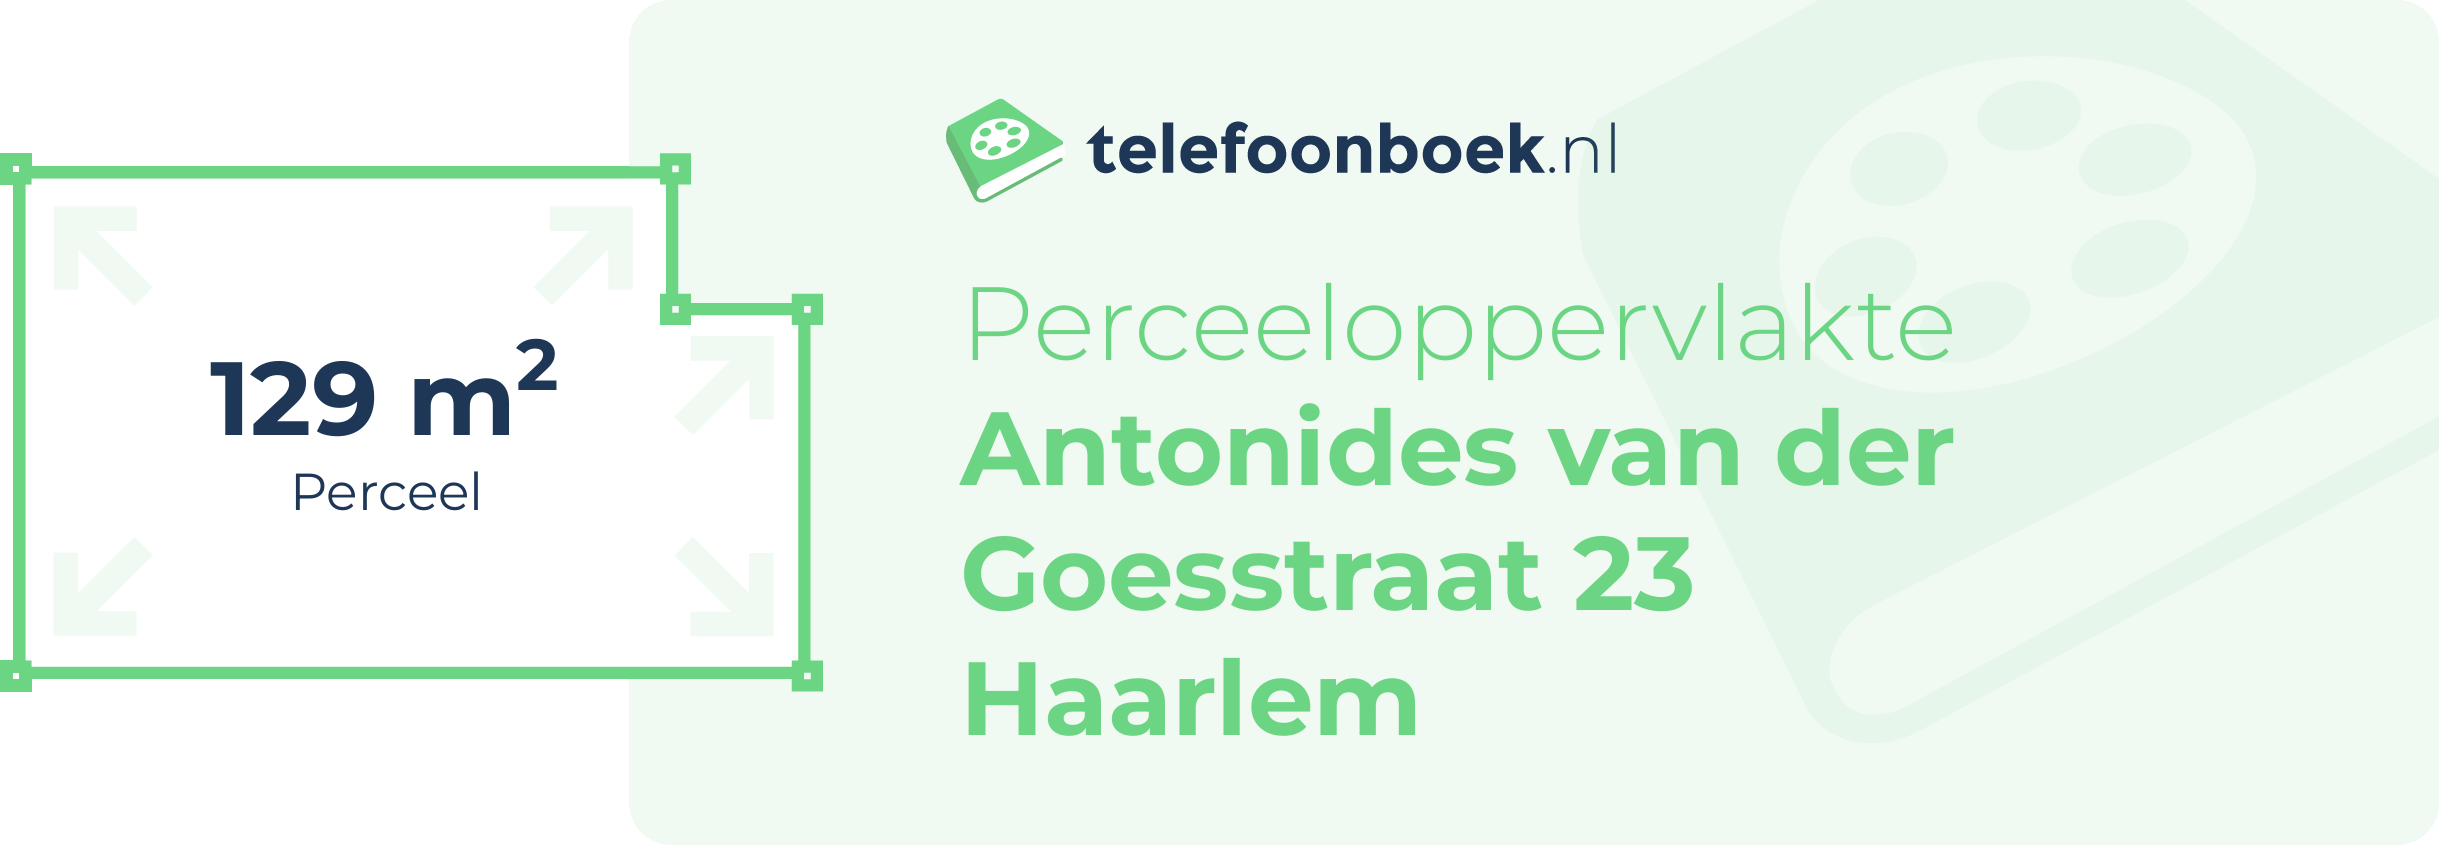 Perceeloppervlakte Antonides Van Der Goesstraat 23 Haarlem